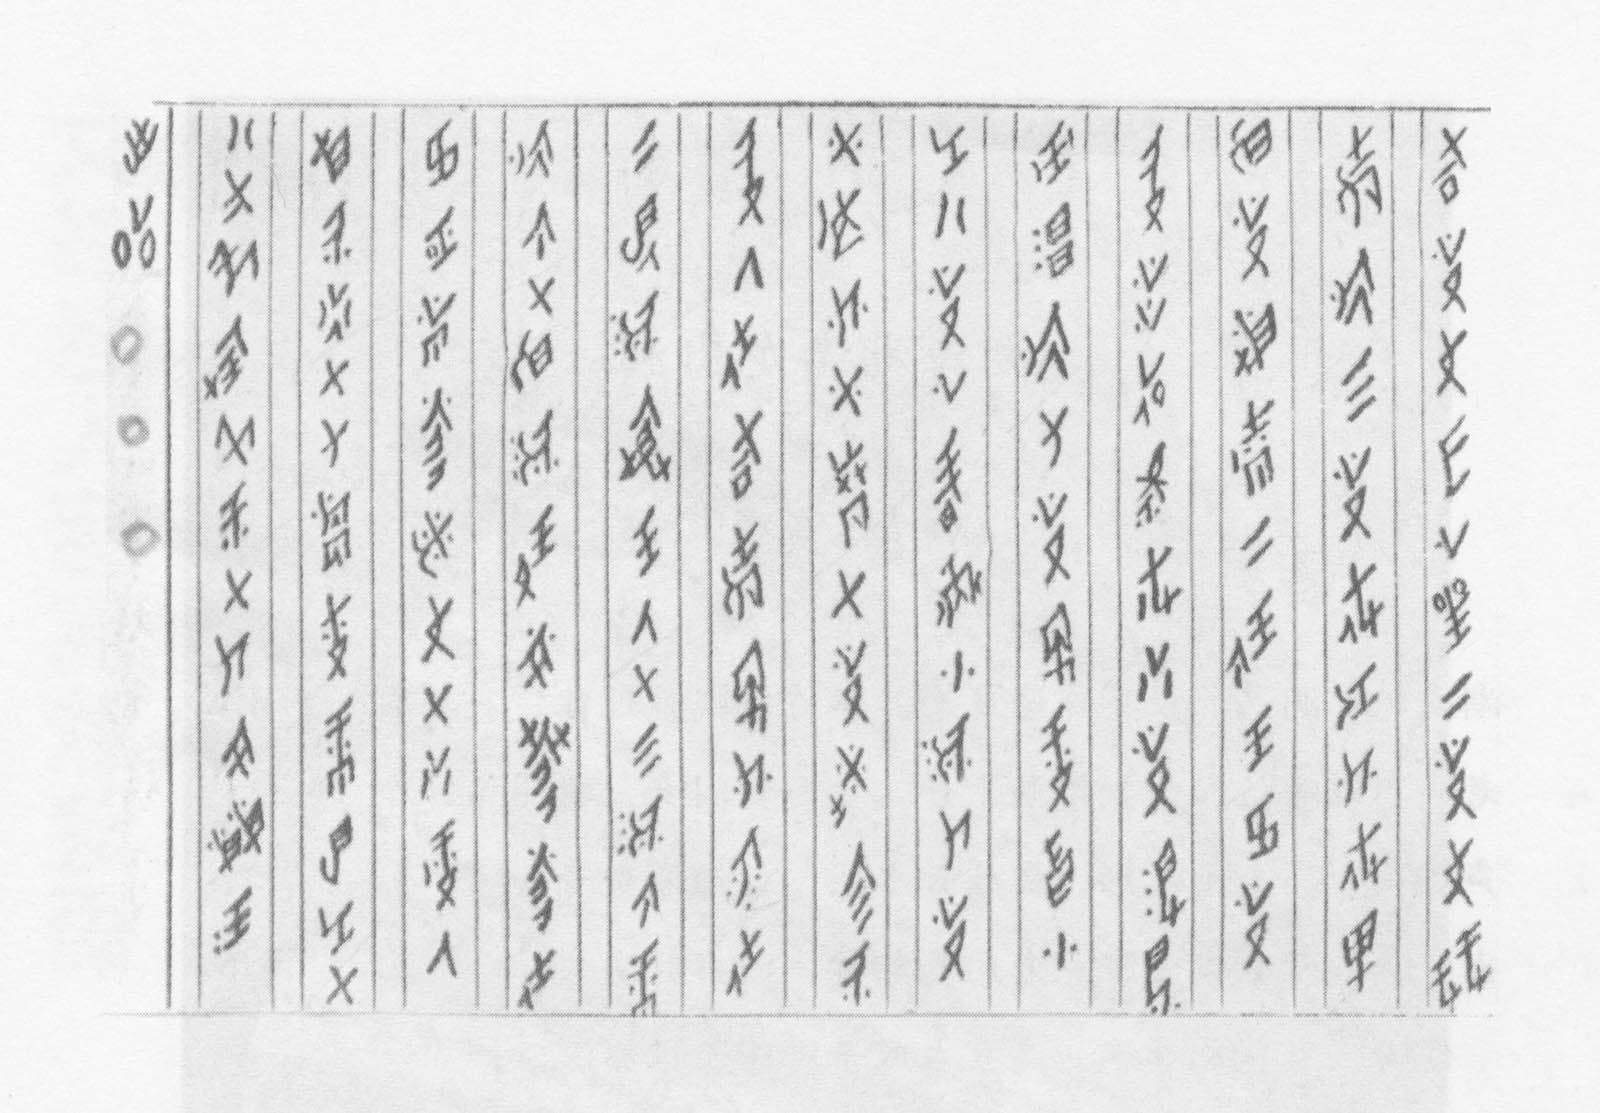 Gao Yinxian's handwriting